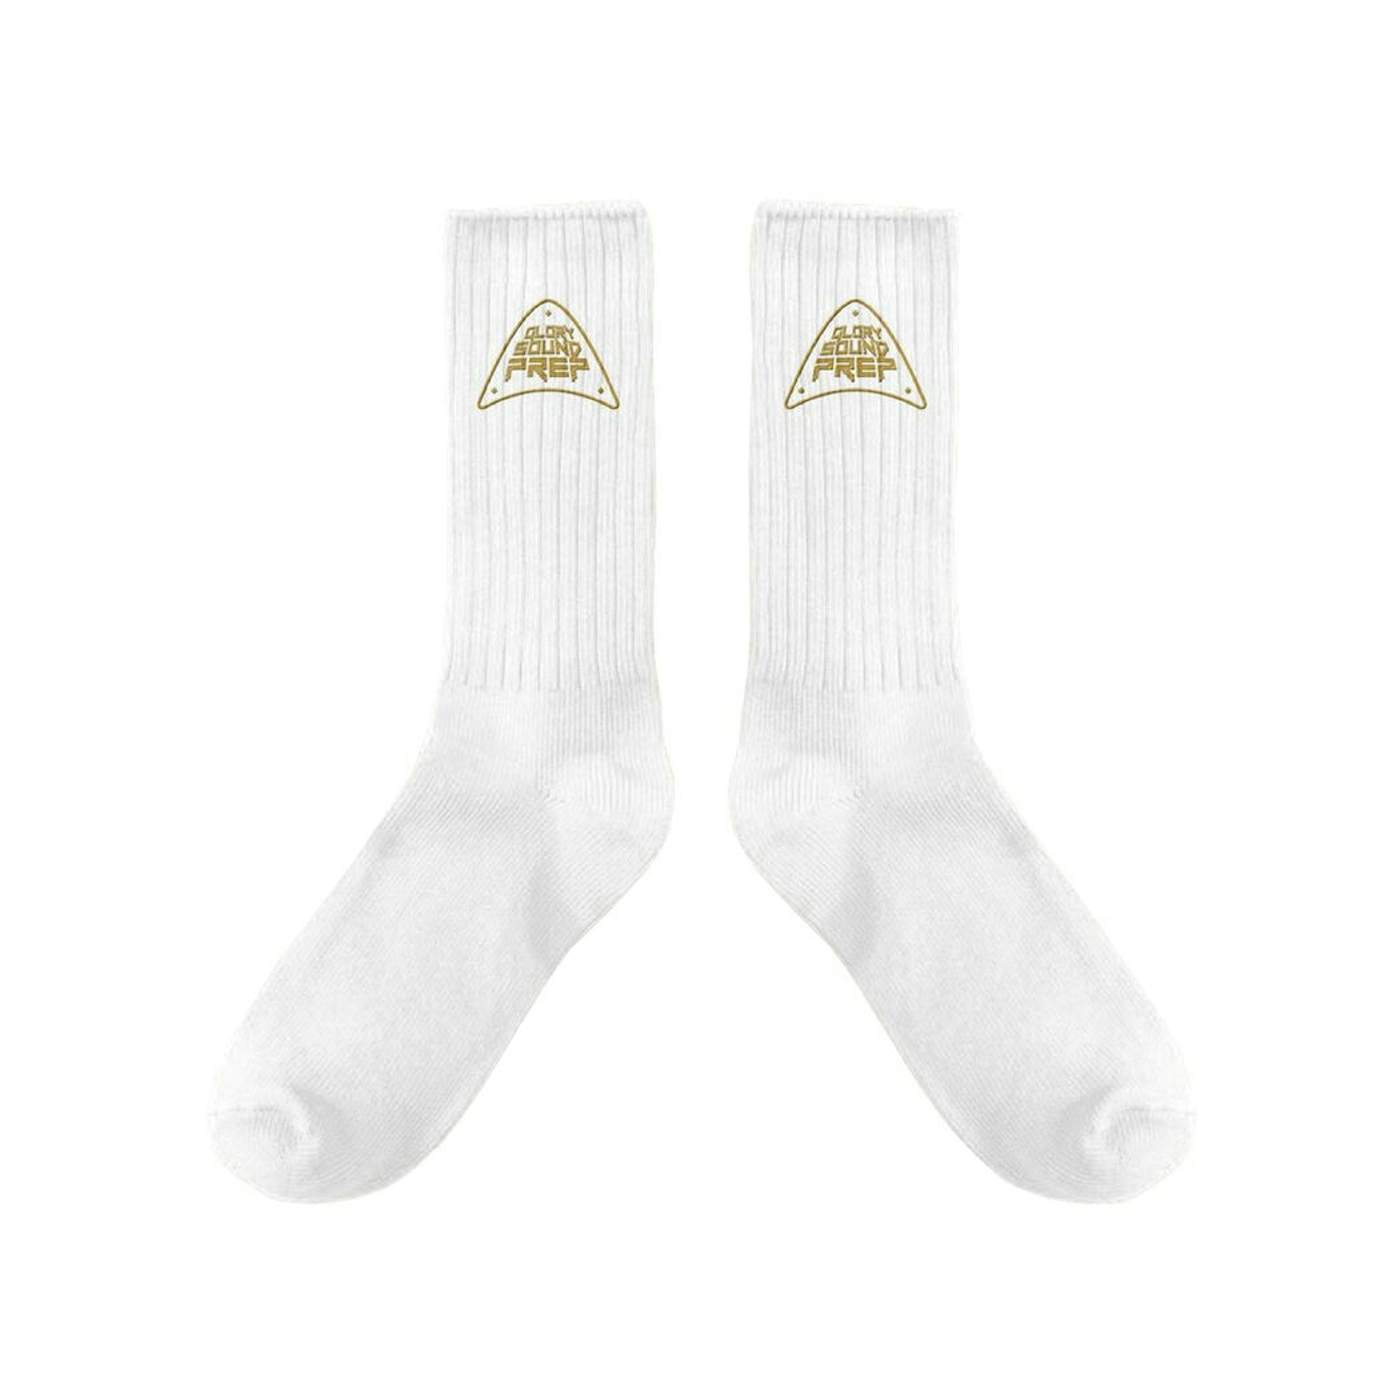 Jon Bellion GSP White Socks